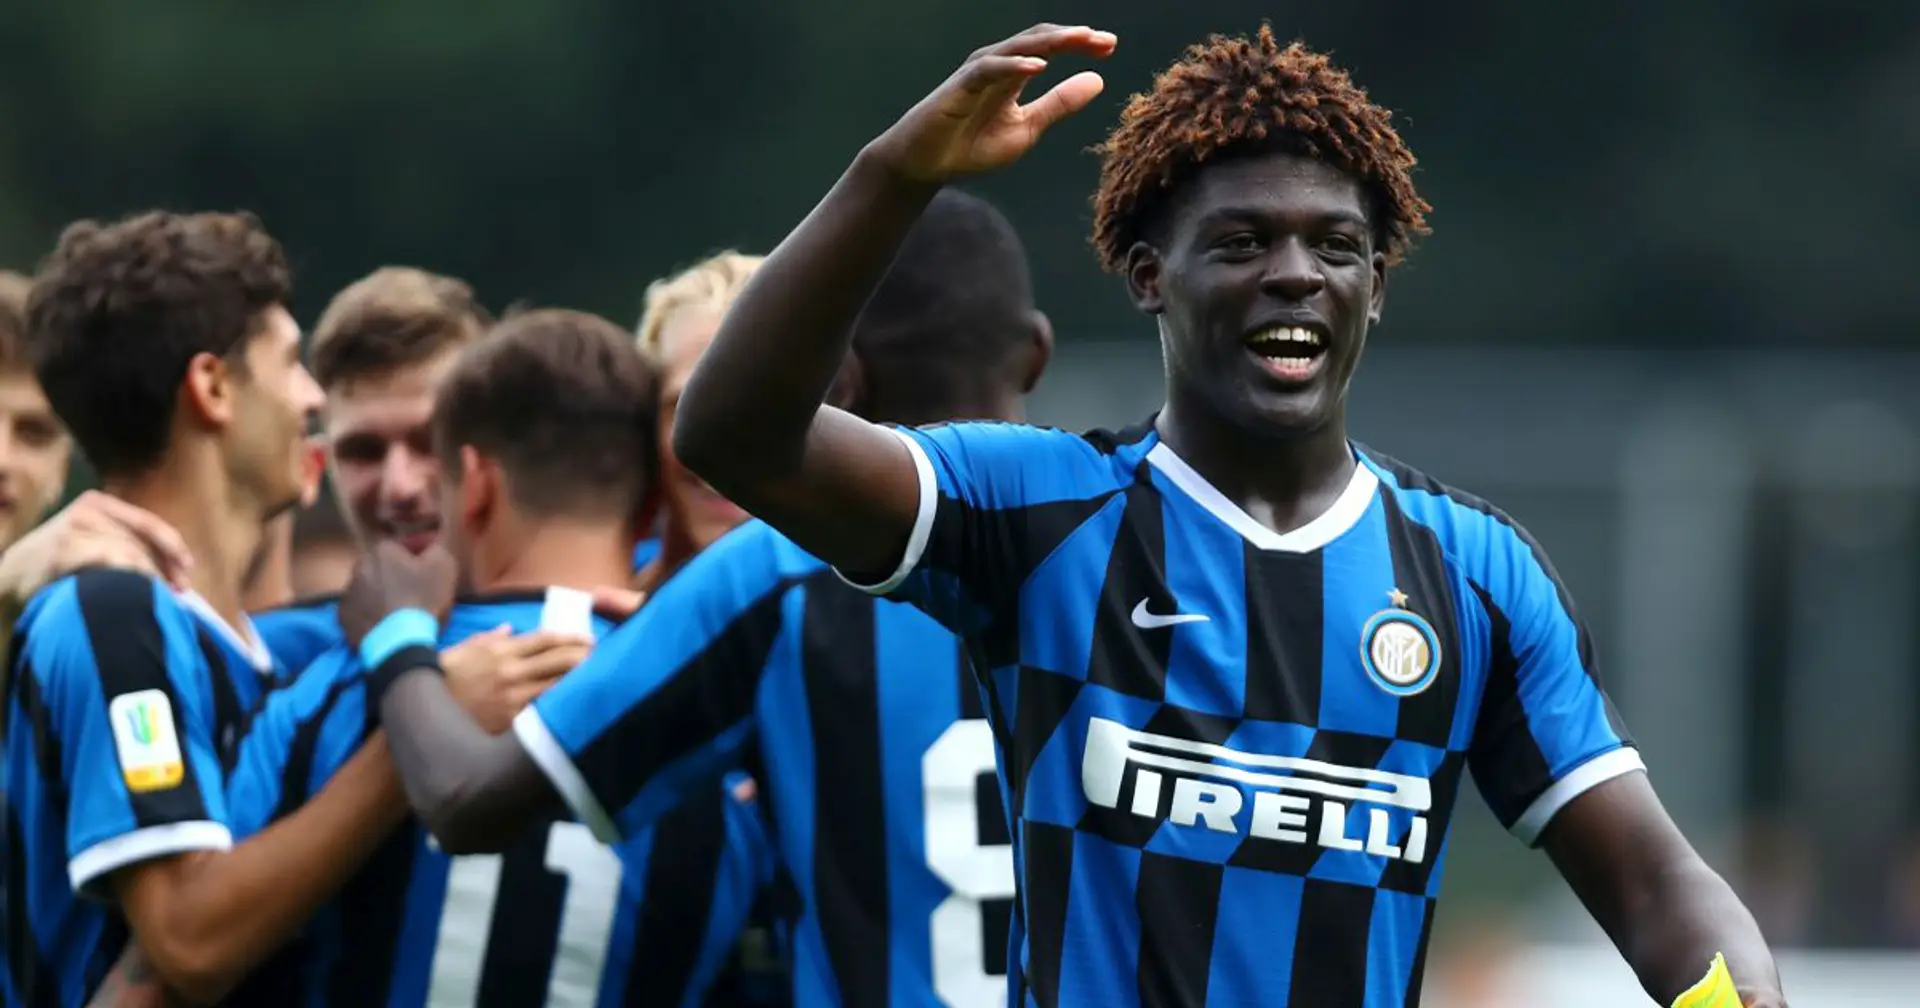 UFFICIALE | Youth League, Inter riammessa: si riparte il 16 agosto dagli ottavi, possibile derby con la Juve ai quarti